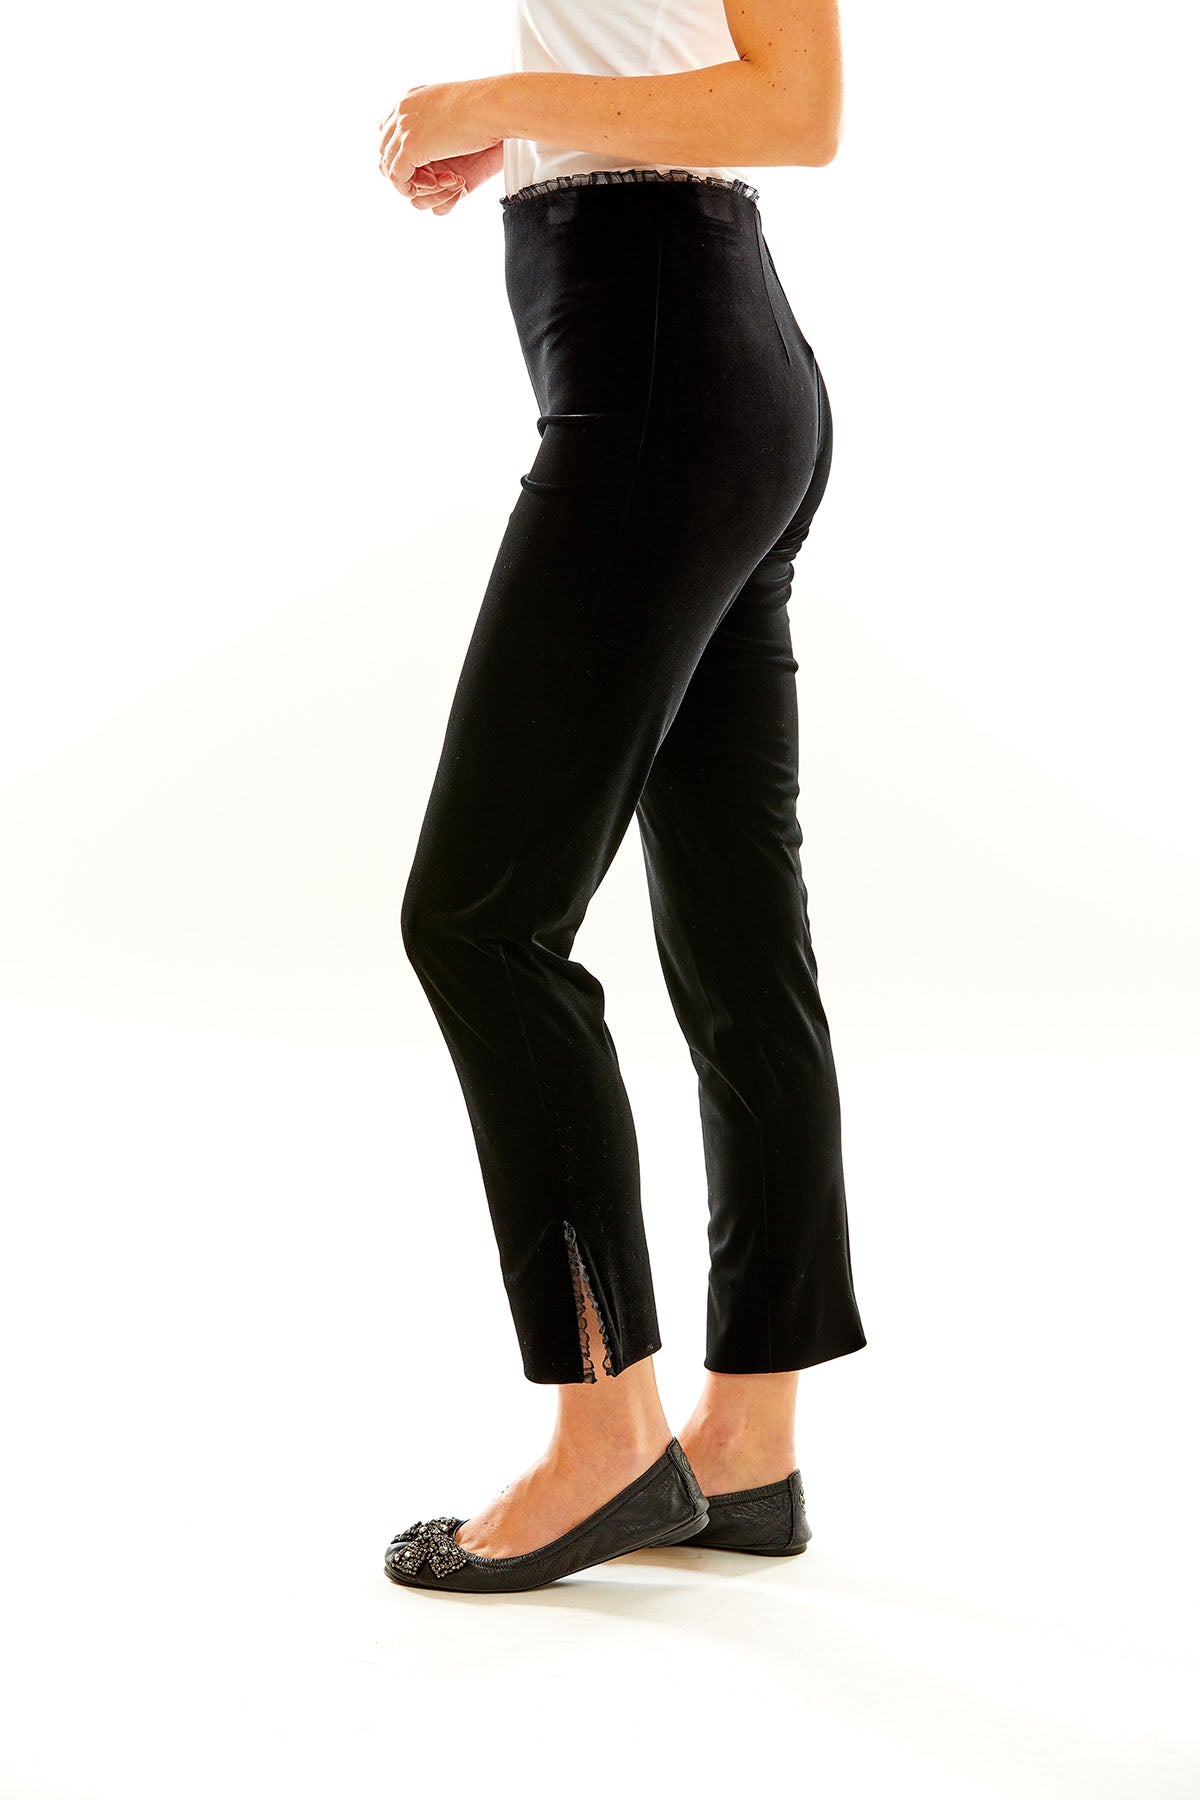 Woman in black velvet pants